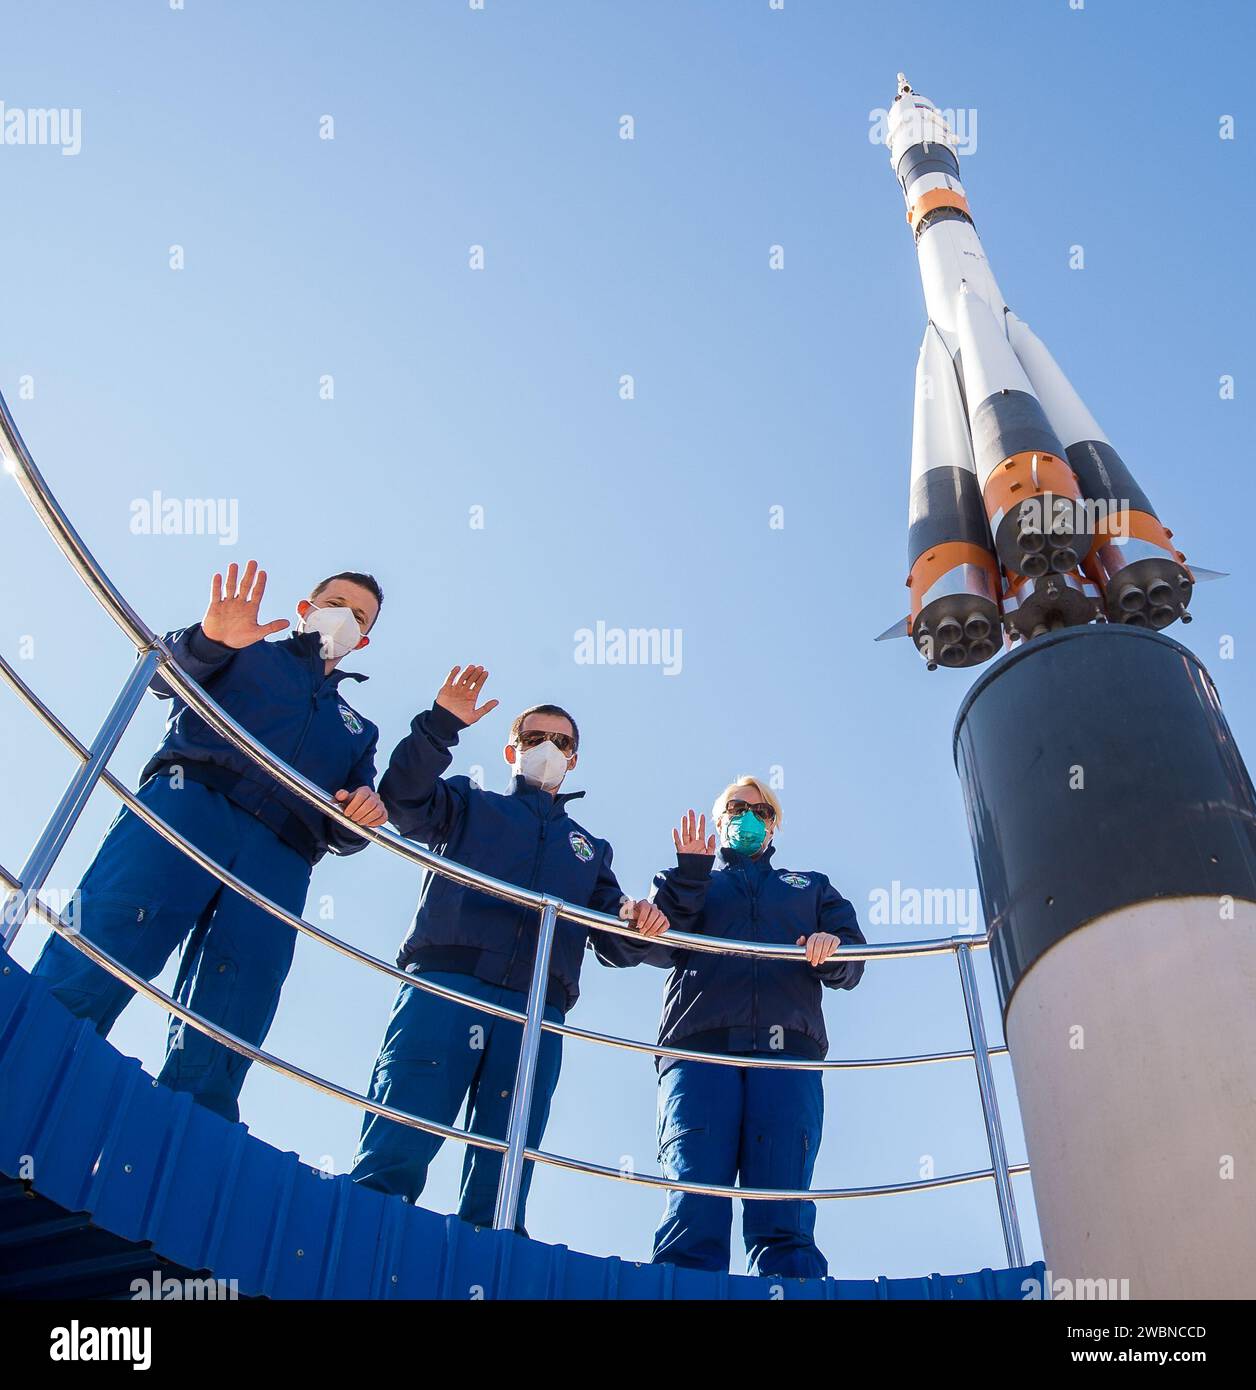 Expedition 64 Besatzungsmitglieder die russischen Kosmonauten Sergej Kud-Swerchkow (links) und Sergej Ryzhikow (Mitte) und NASA-Astronautin Kate Rubins (rechts) posieren für ein Foto als Teil der Aktivitäten vor dem Start am Dienstag, 6. Oktober 2020, im Cosmonaut Hotel in Baikonur, Kasachstan. Das Trio soll am 14. Oktober an Bord des Raumschiffs Sojus MS-17 zur Internationalen Raumstation starten. Stockfoto